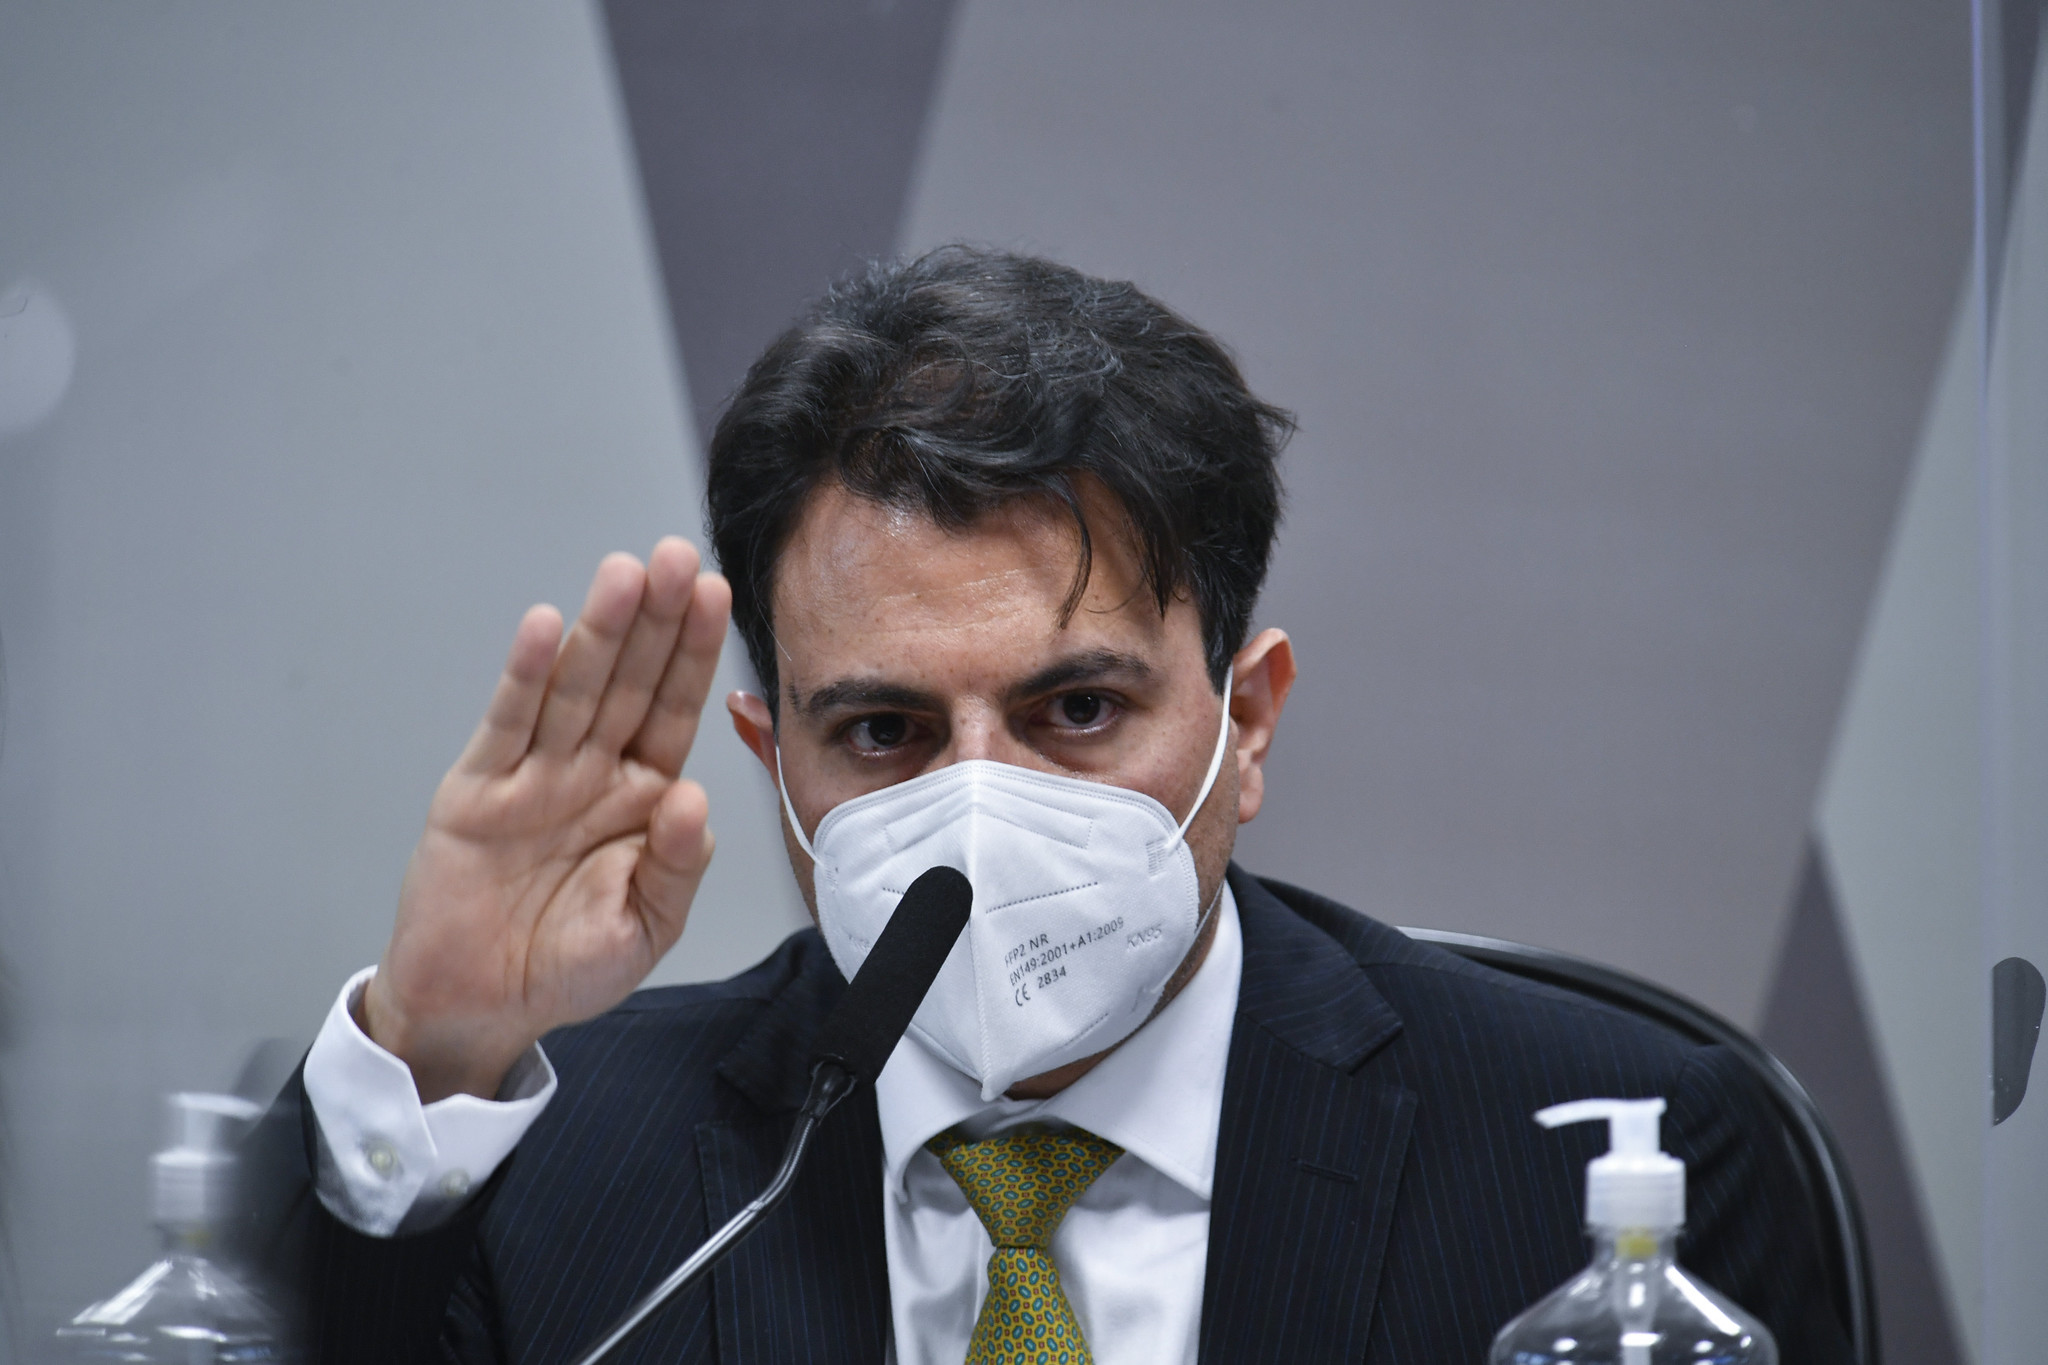 Acusado de financiar fake news, Fakhoury deu dinheiro a ONG dos Weintraub e  Força Brasil, Atualidade